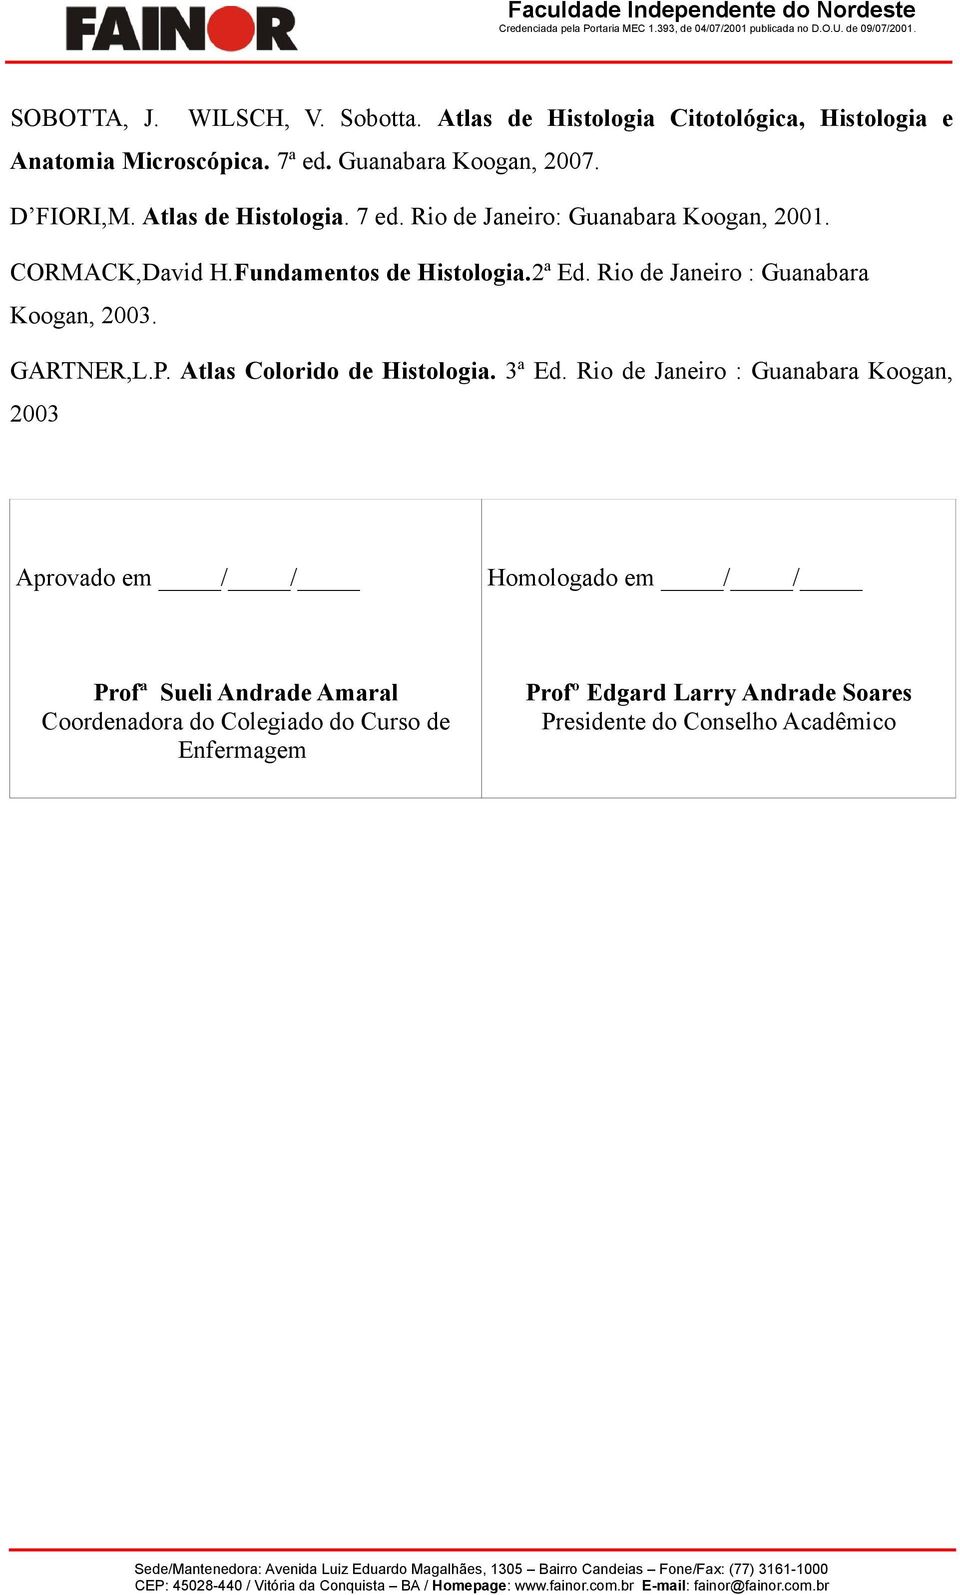 Ri de Janeir: Guanabara Kgan, 2001. CORMACK,David H.Fundaments de Histlgia.2ª Ed. Ri de Janeir : Guanabara Kgan, 2003. GARTNER,L.P.